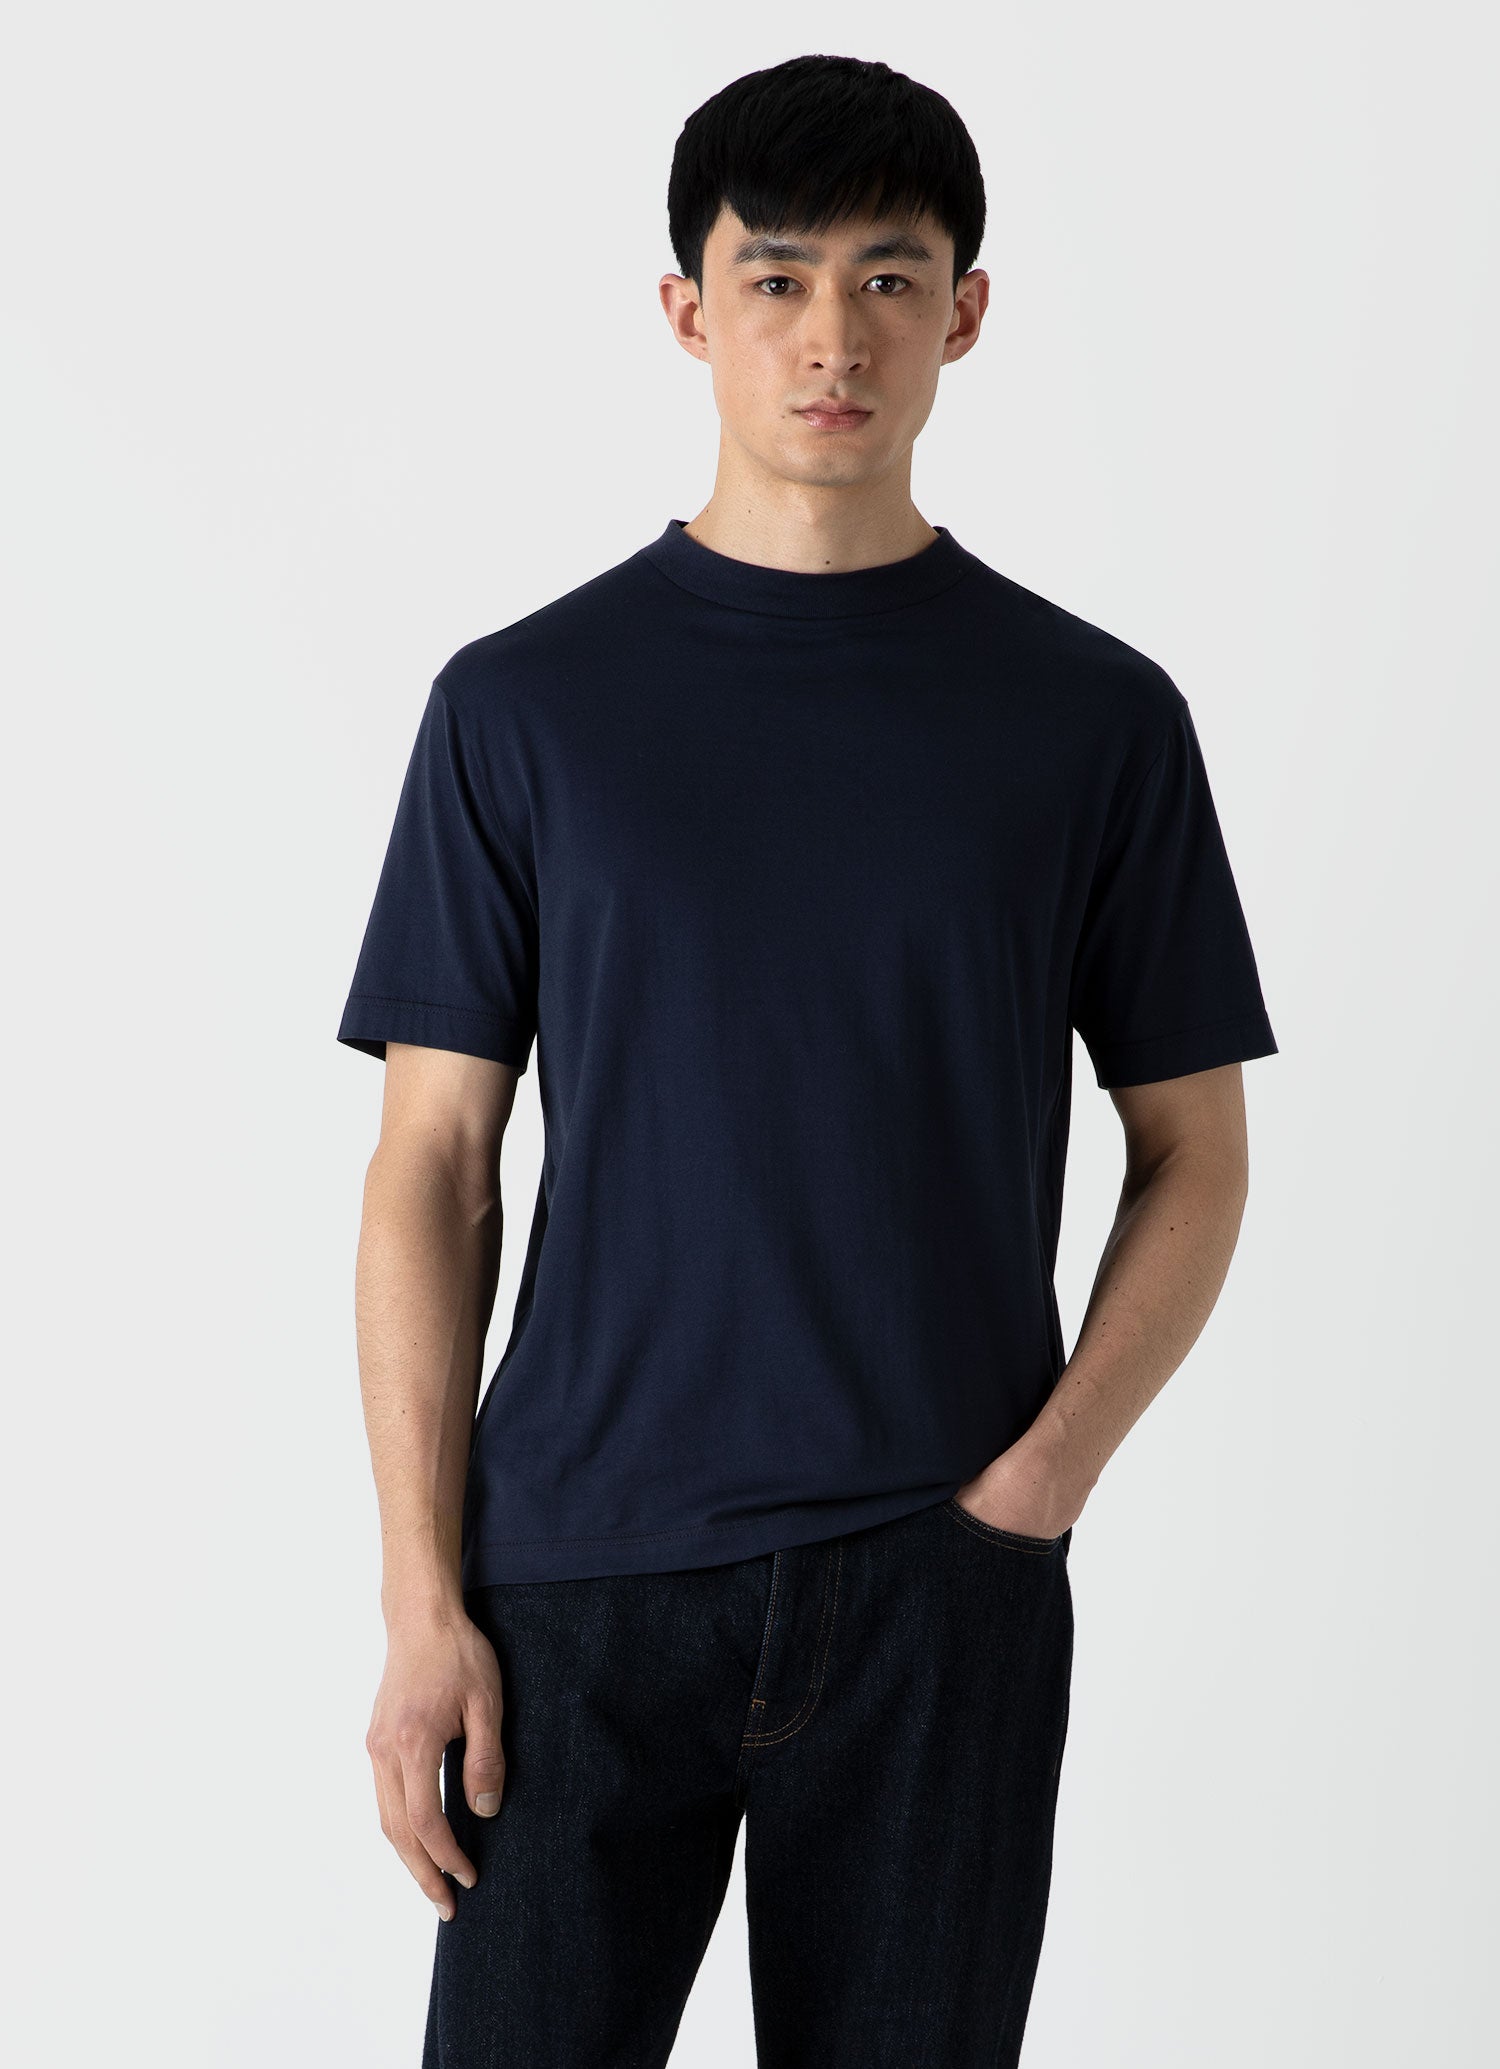 Men's Riviera Midweight Pocket T-shirt in Navy | Sunspel